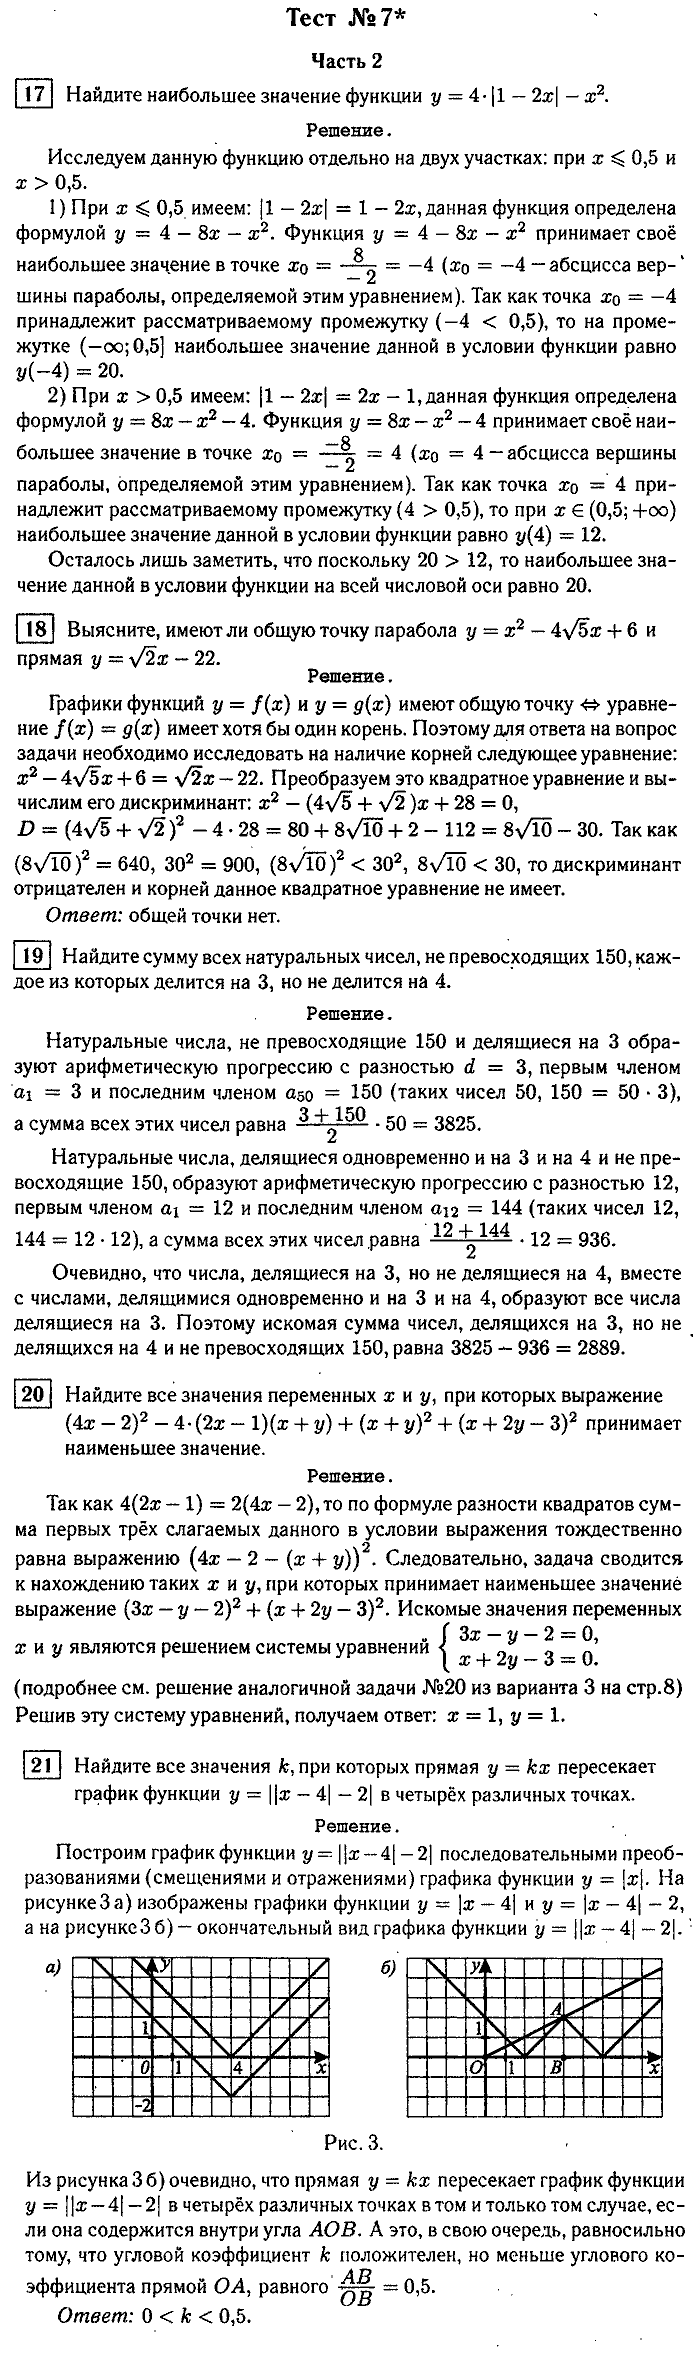 Итоговая аттестация, 9 класс, Мальцева, 2010, §1. Решение тестов 2009 г. Задание: Тест №7